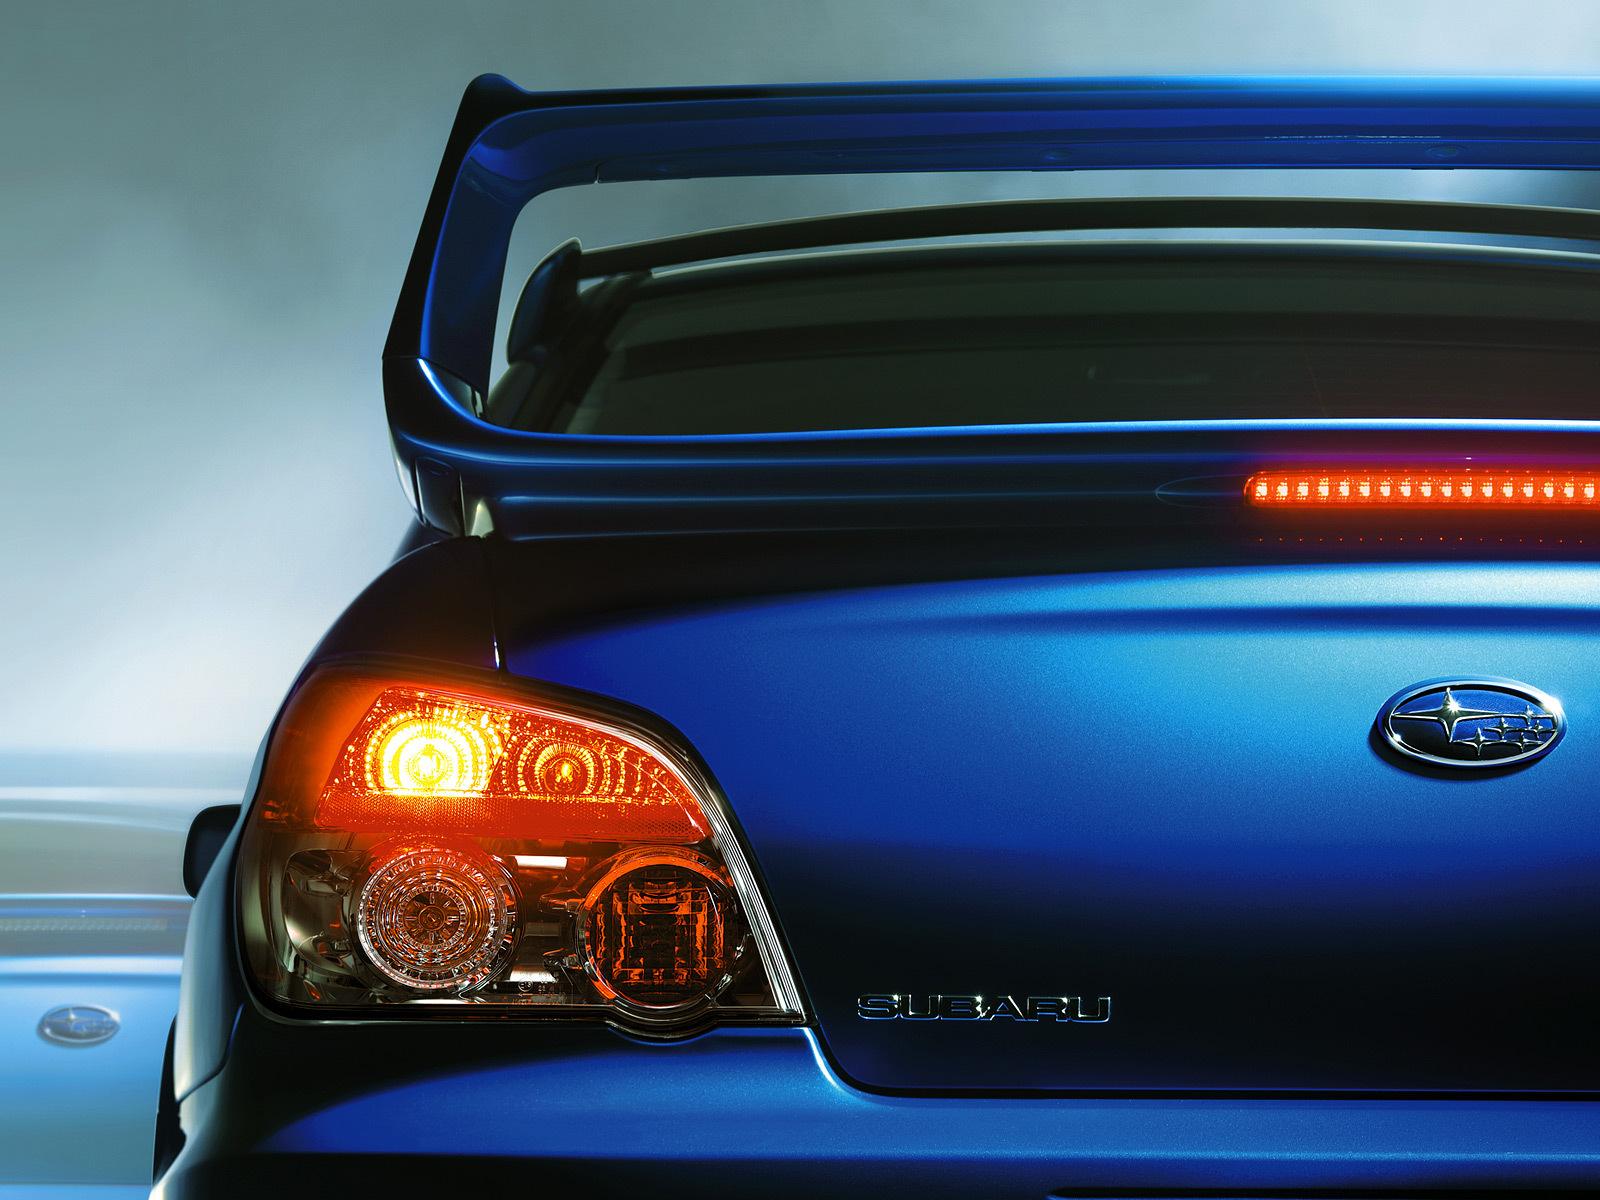 Best 52+ Subaru Backgrounds on HipWallpapers